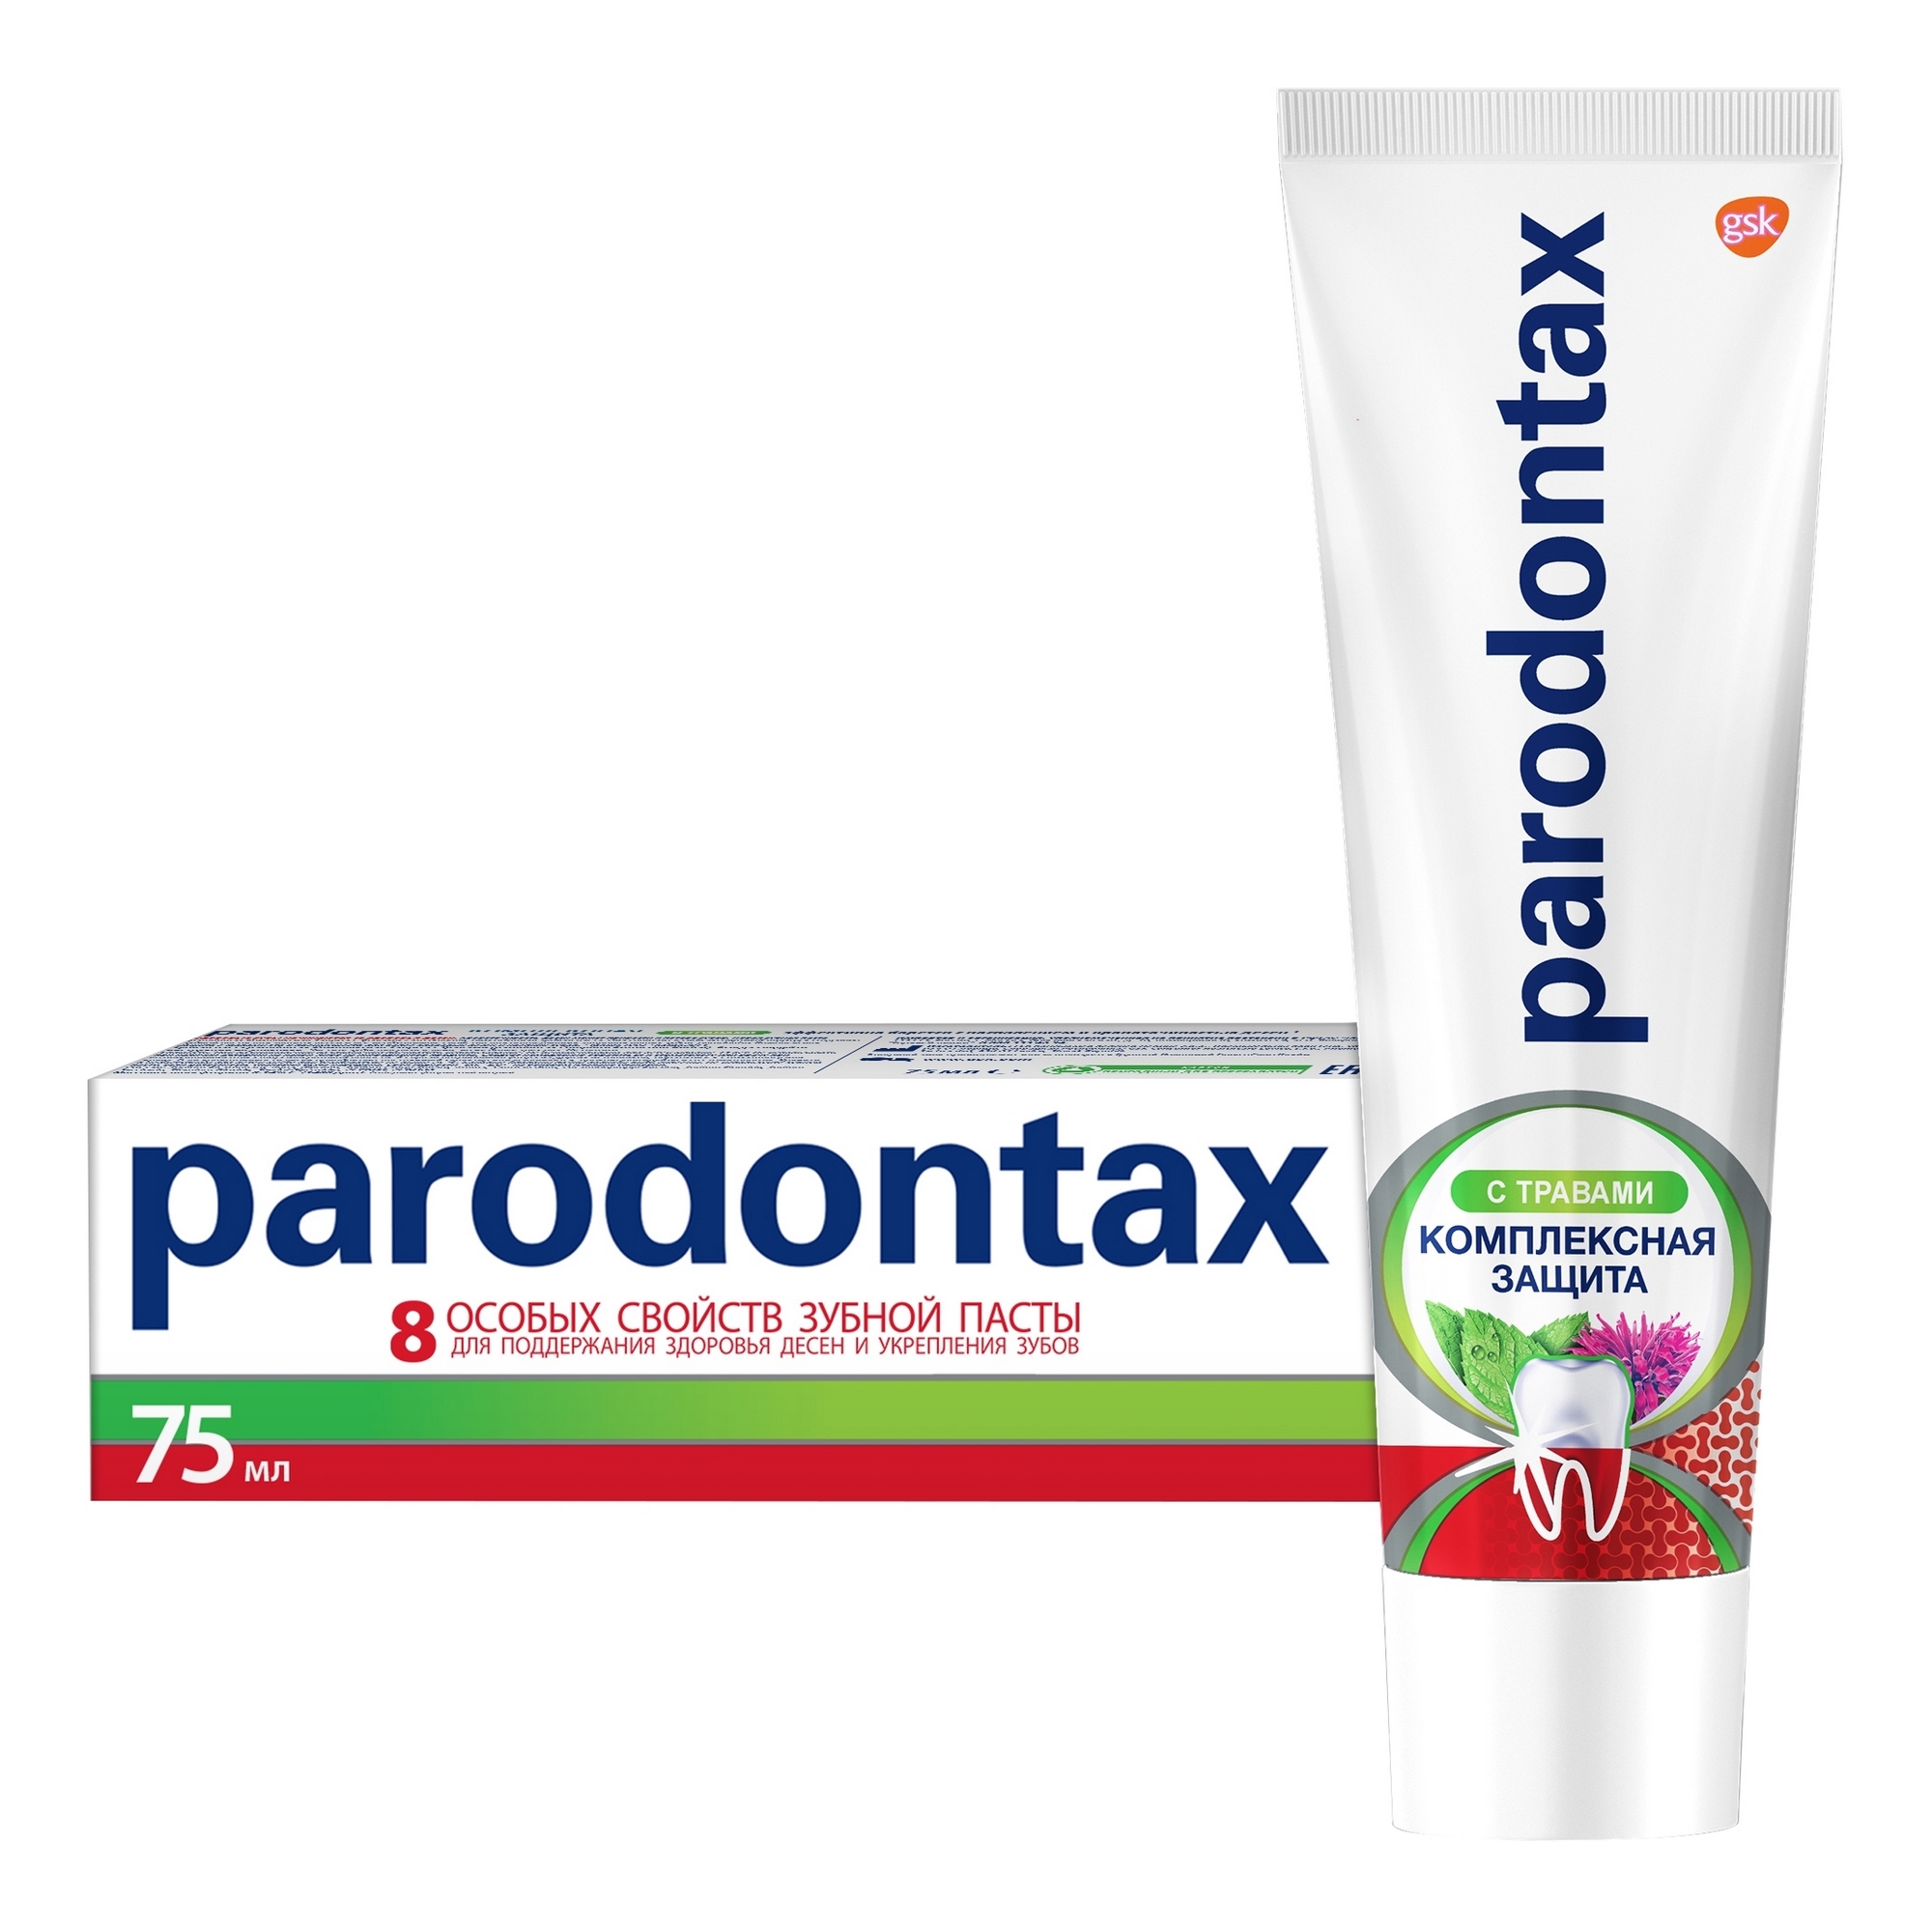 Зубная паста Parodontax Комплексная защита с травами 75 мл parodontax зубная паста комплексная защита с травами 75 мл